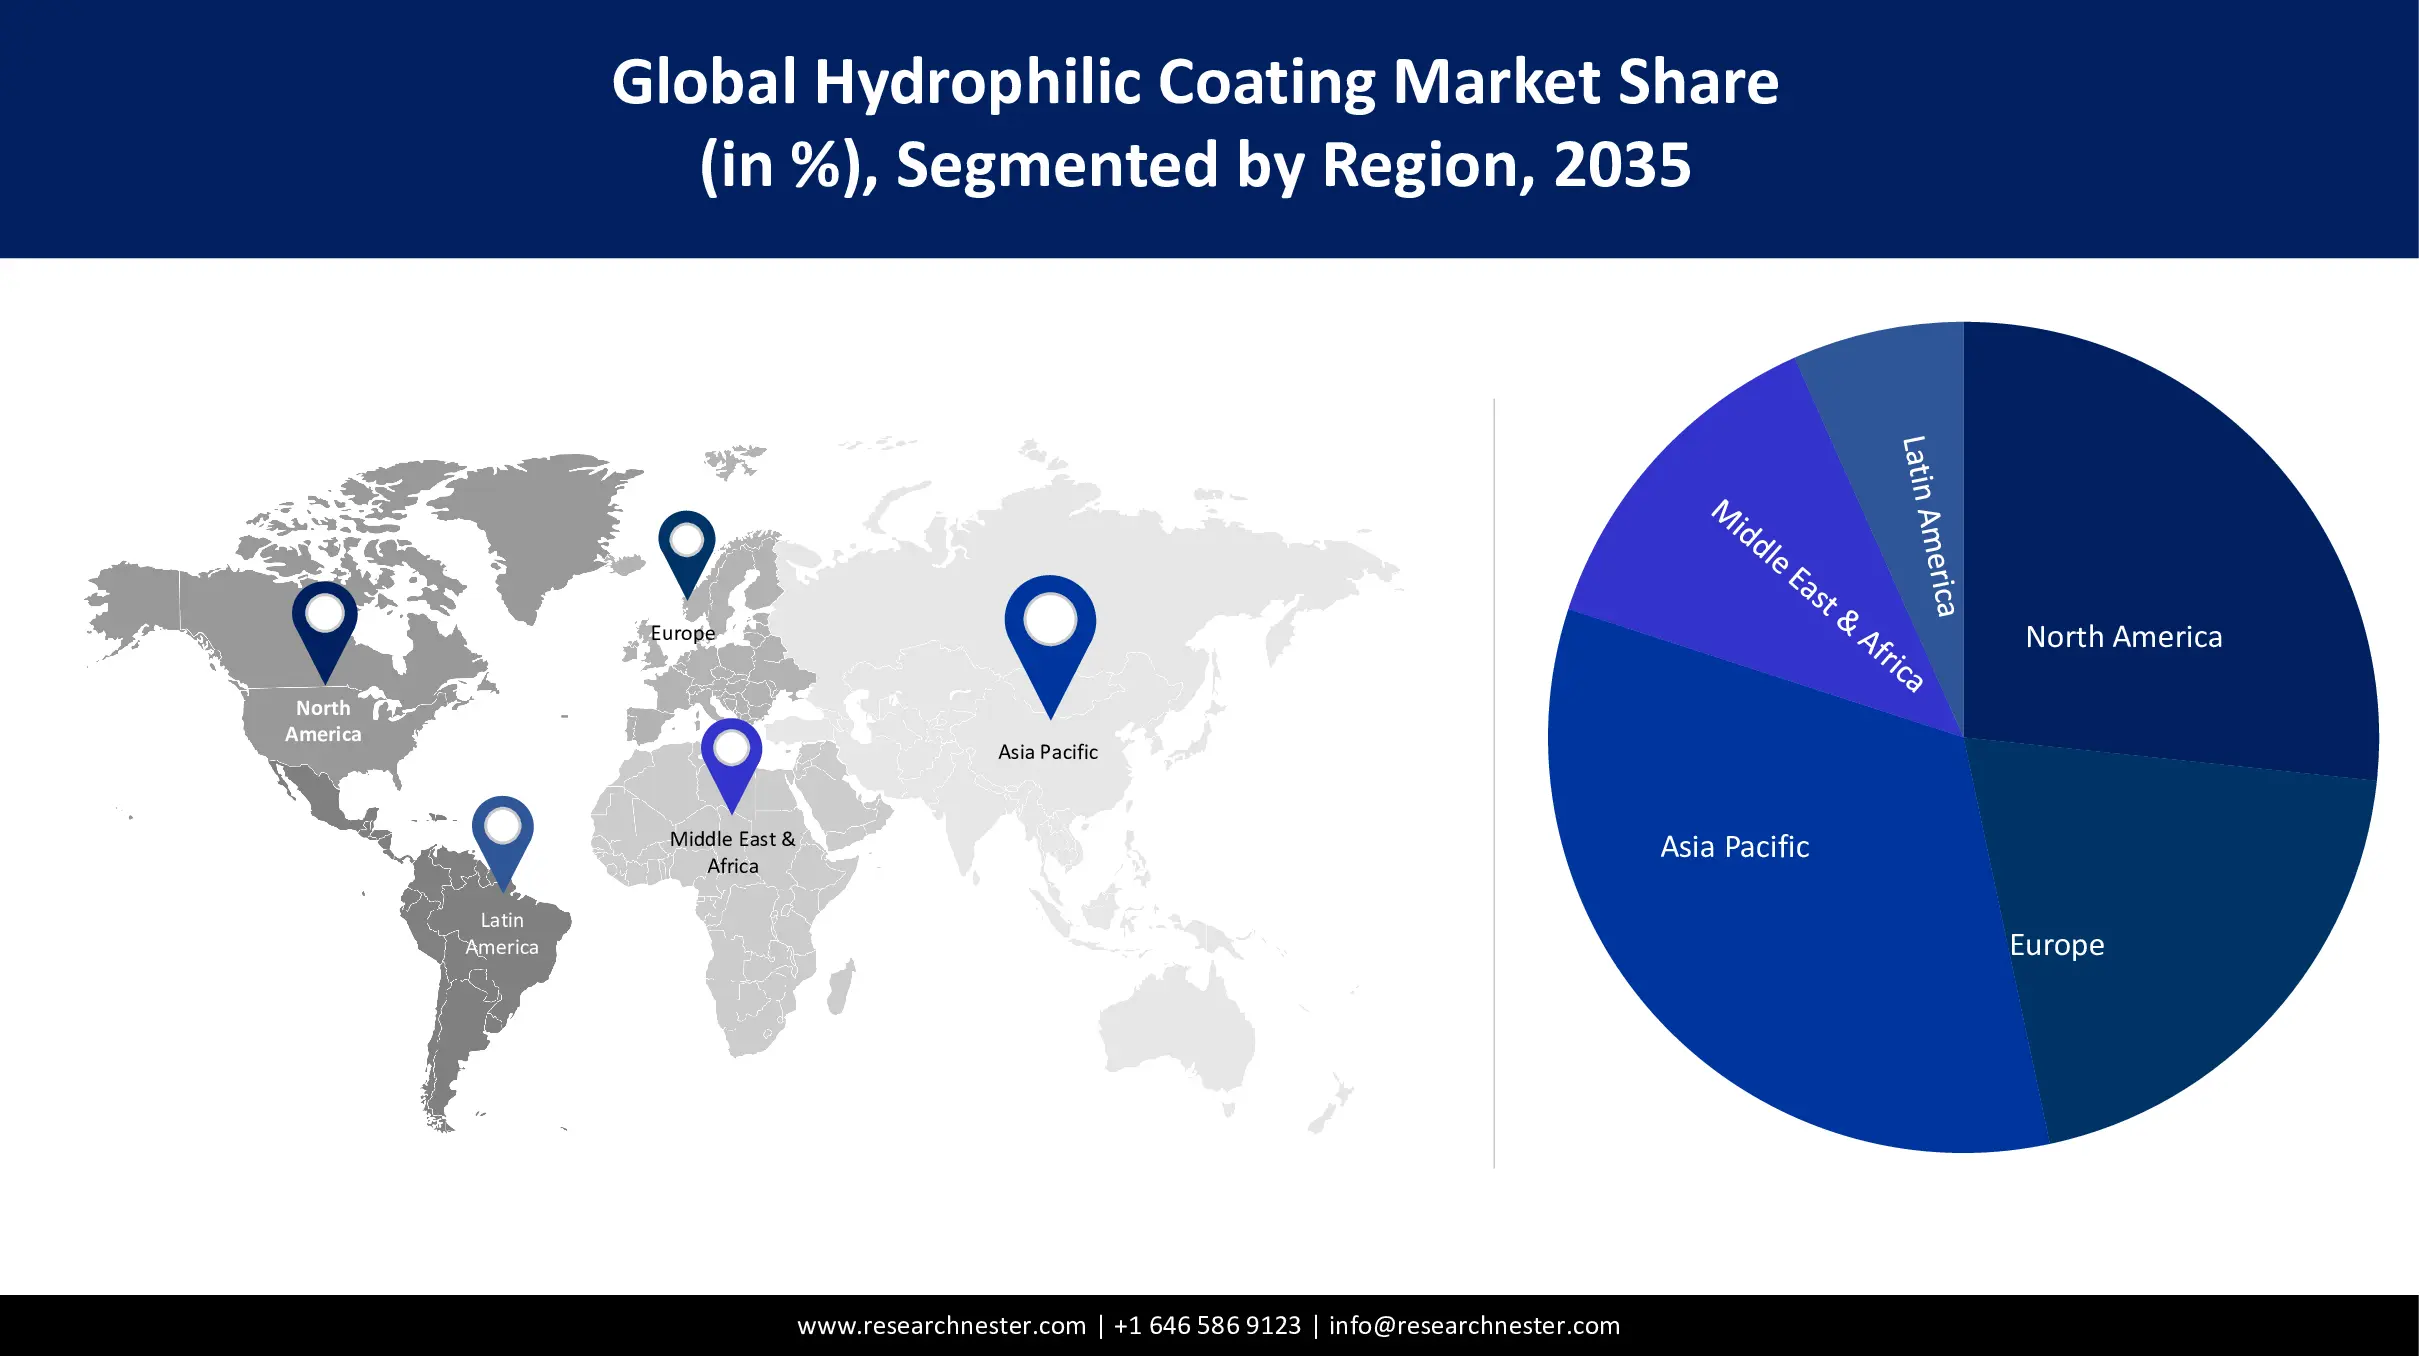 Hydrophilic Coating Market Share